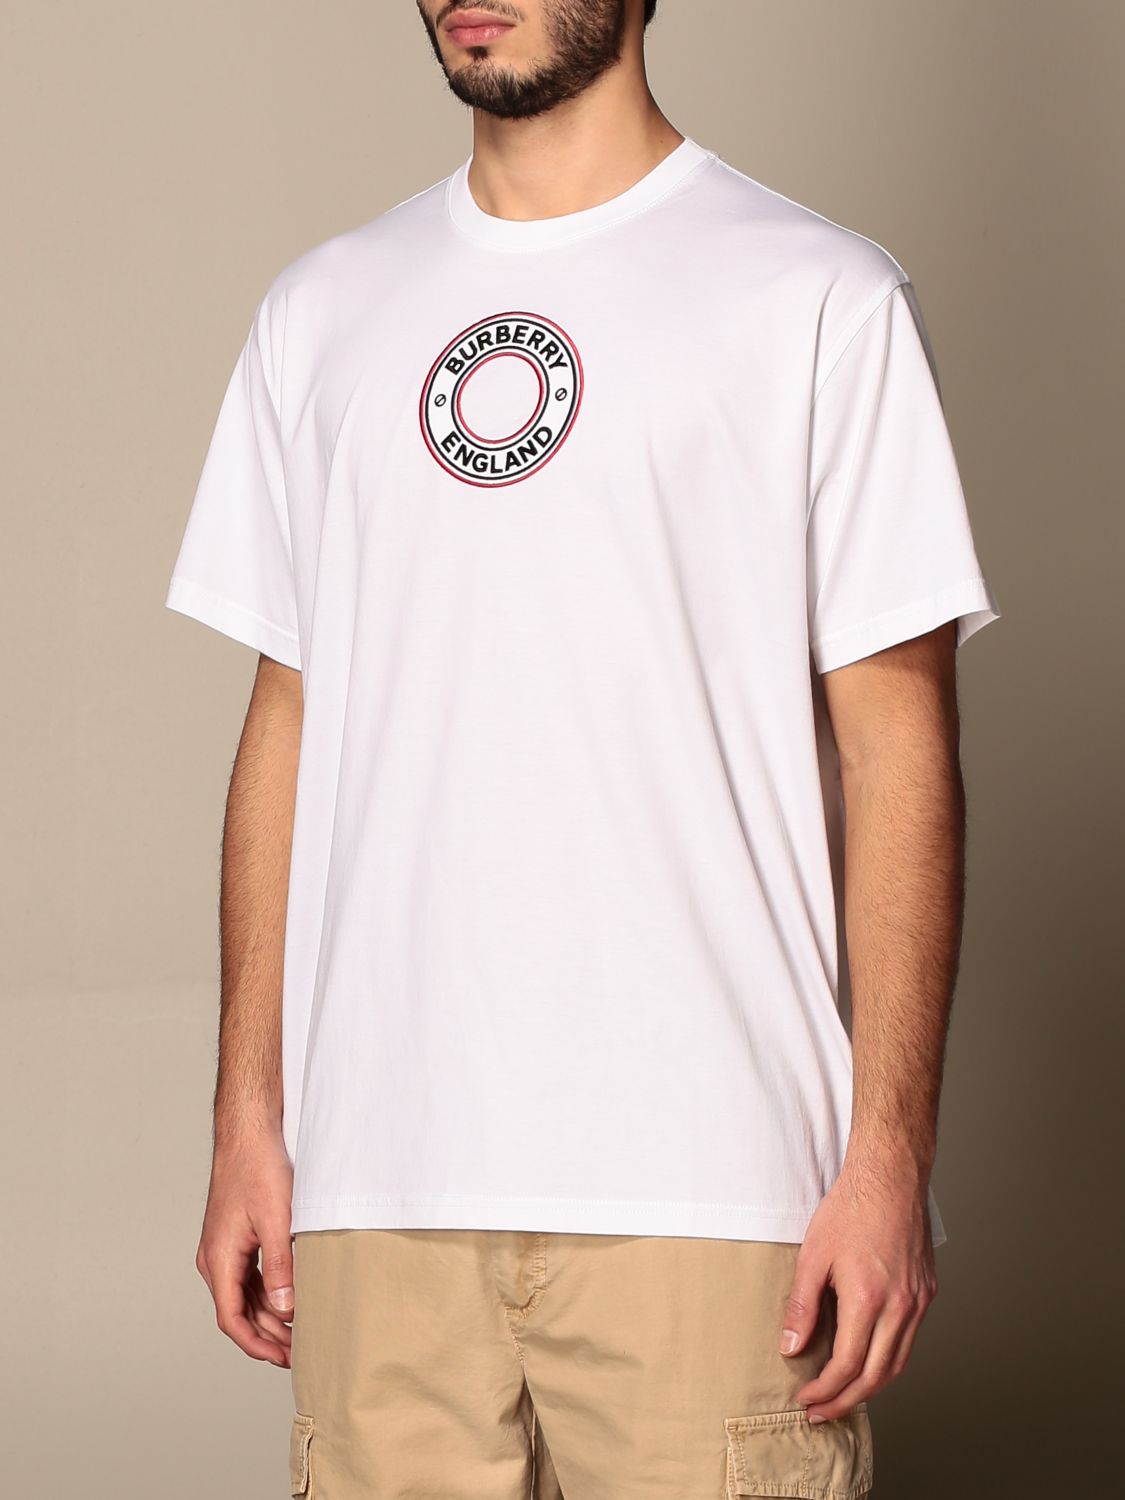 バーバリー(BURBERRY): Tシャツ メンズ - ホワイト | Tシャツ バーバリー 8037048 GIGLIO.COM